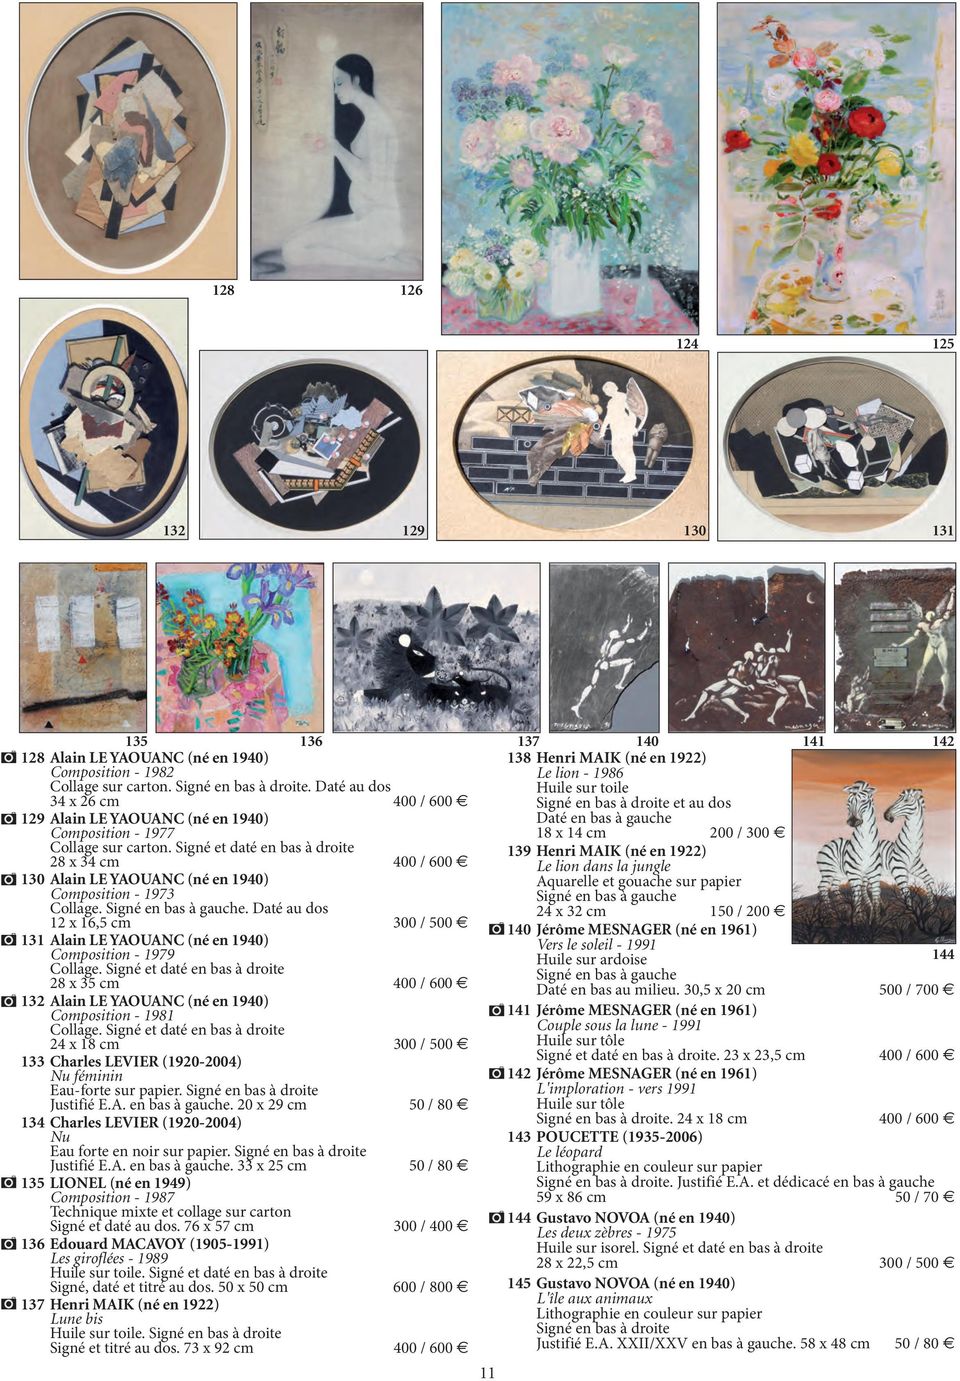 Signé et daté en bas à droite 28 x 34 cm 400 / 600 130 Alain LE YAOUANC (né en 1940) Composition - 1973 Collage.